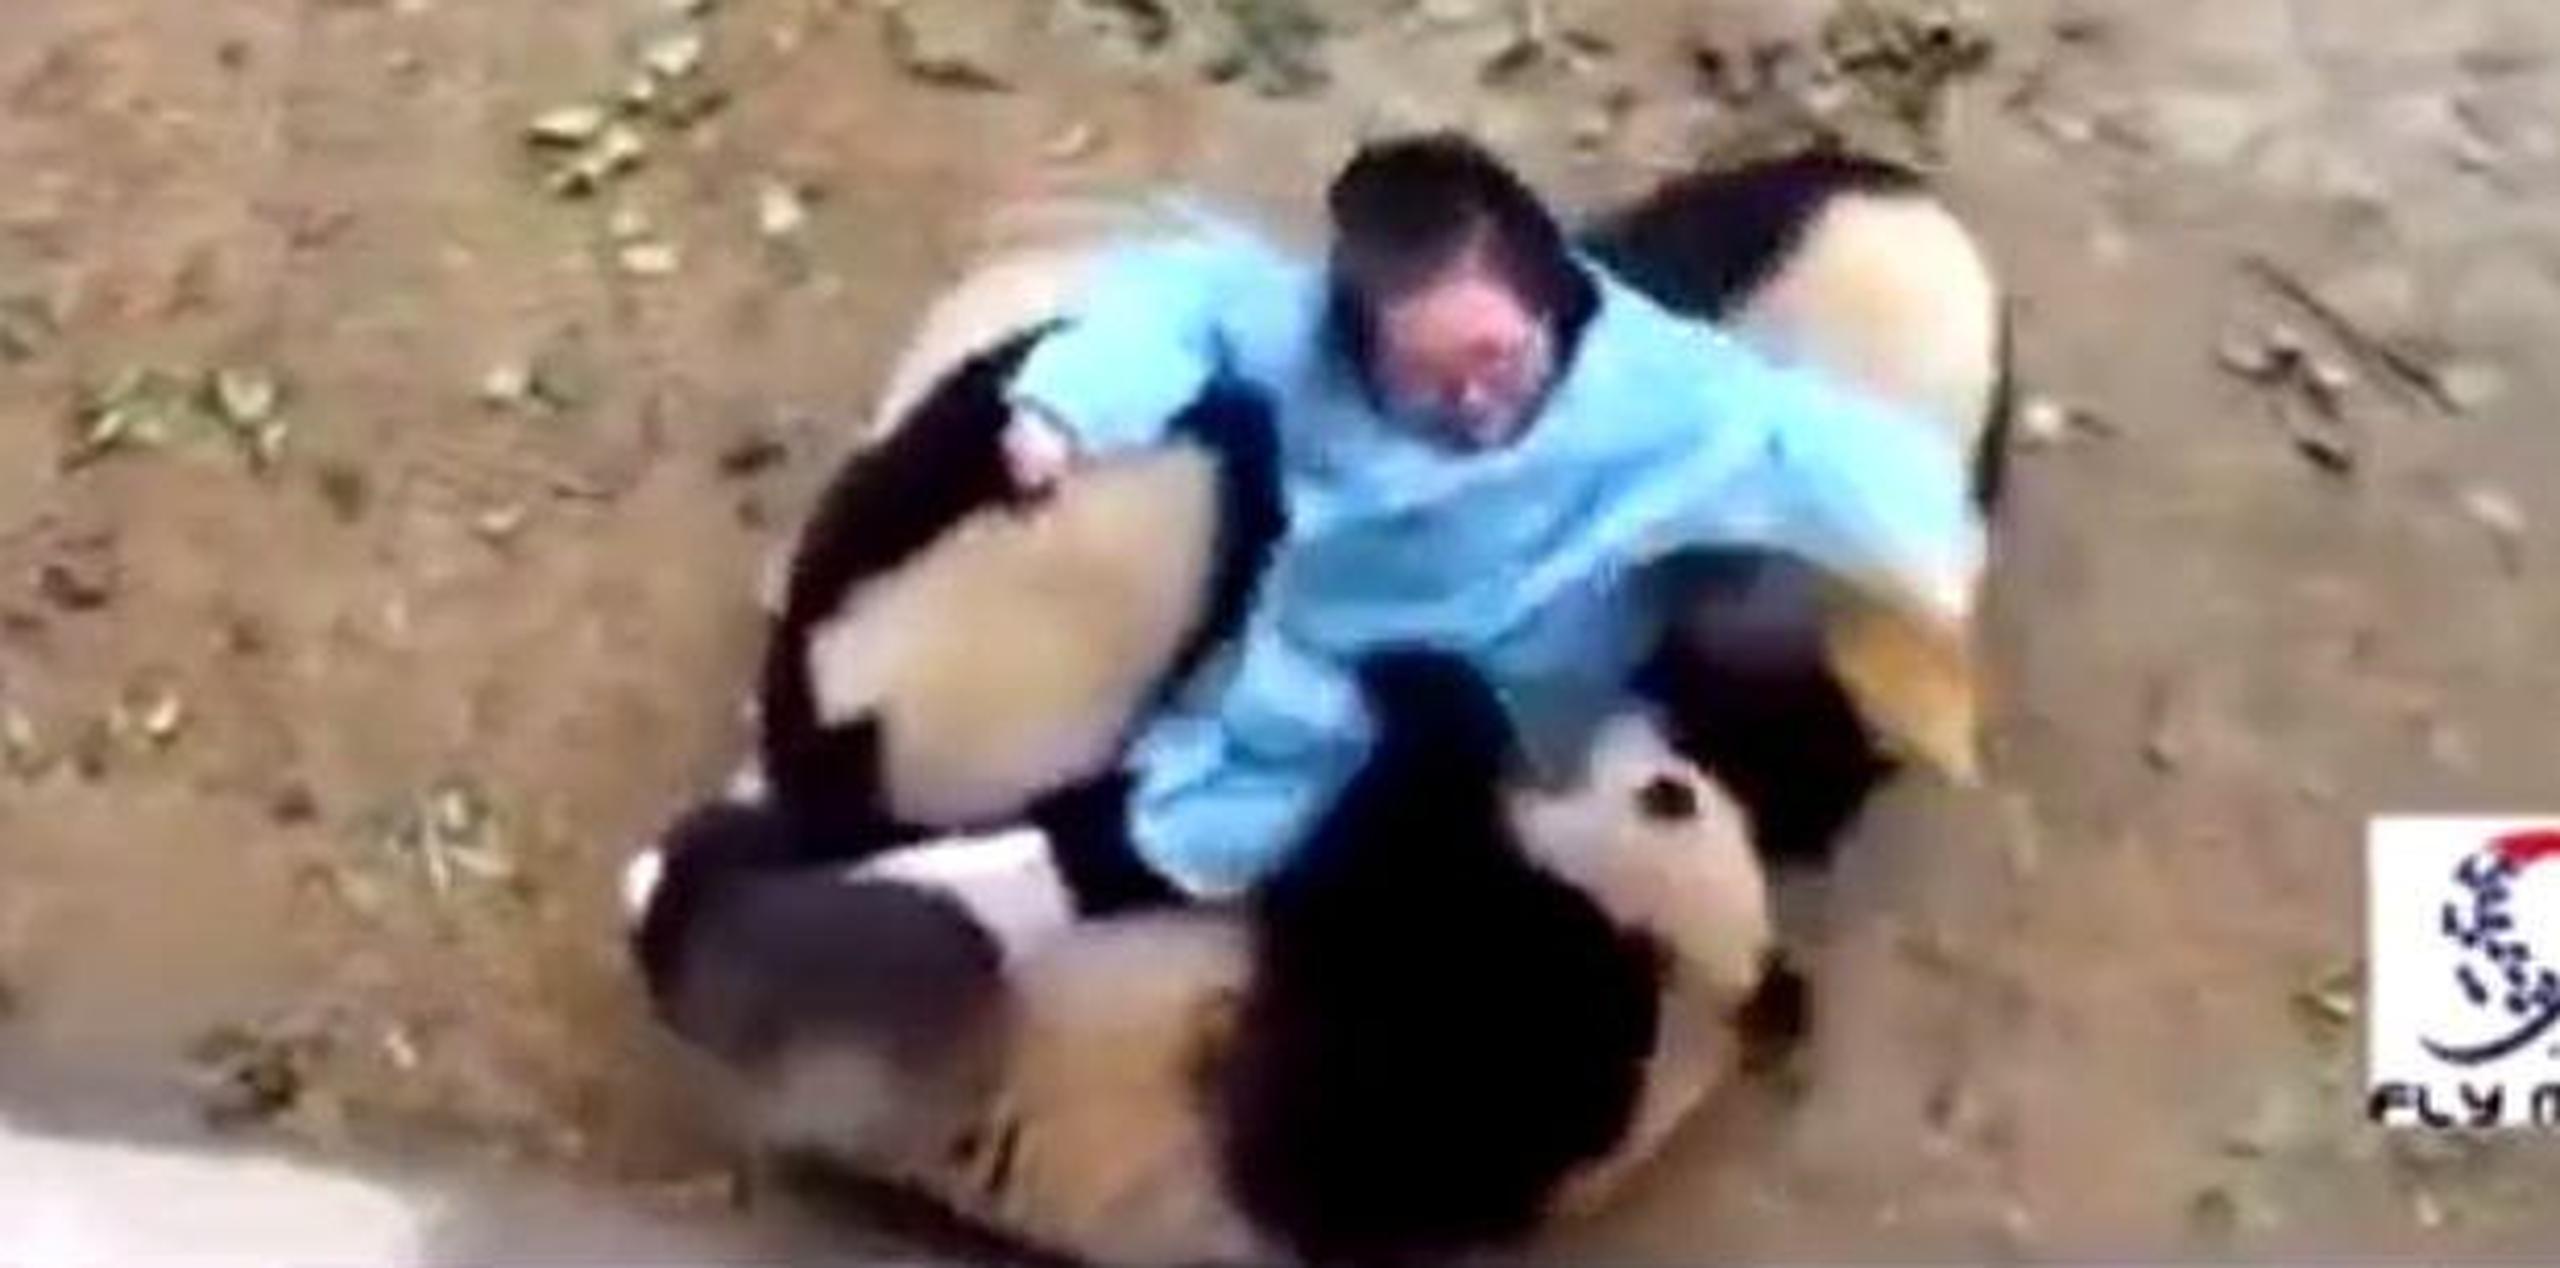 La situación vivida por la encargada de cuidar a estos osos panda en un zoológico de China se ha convertido en viral en Facebook. (Captura)